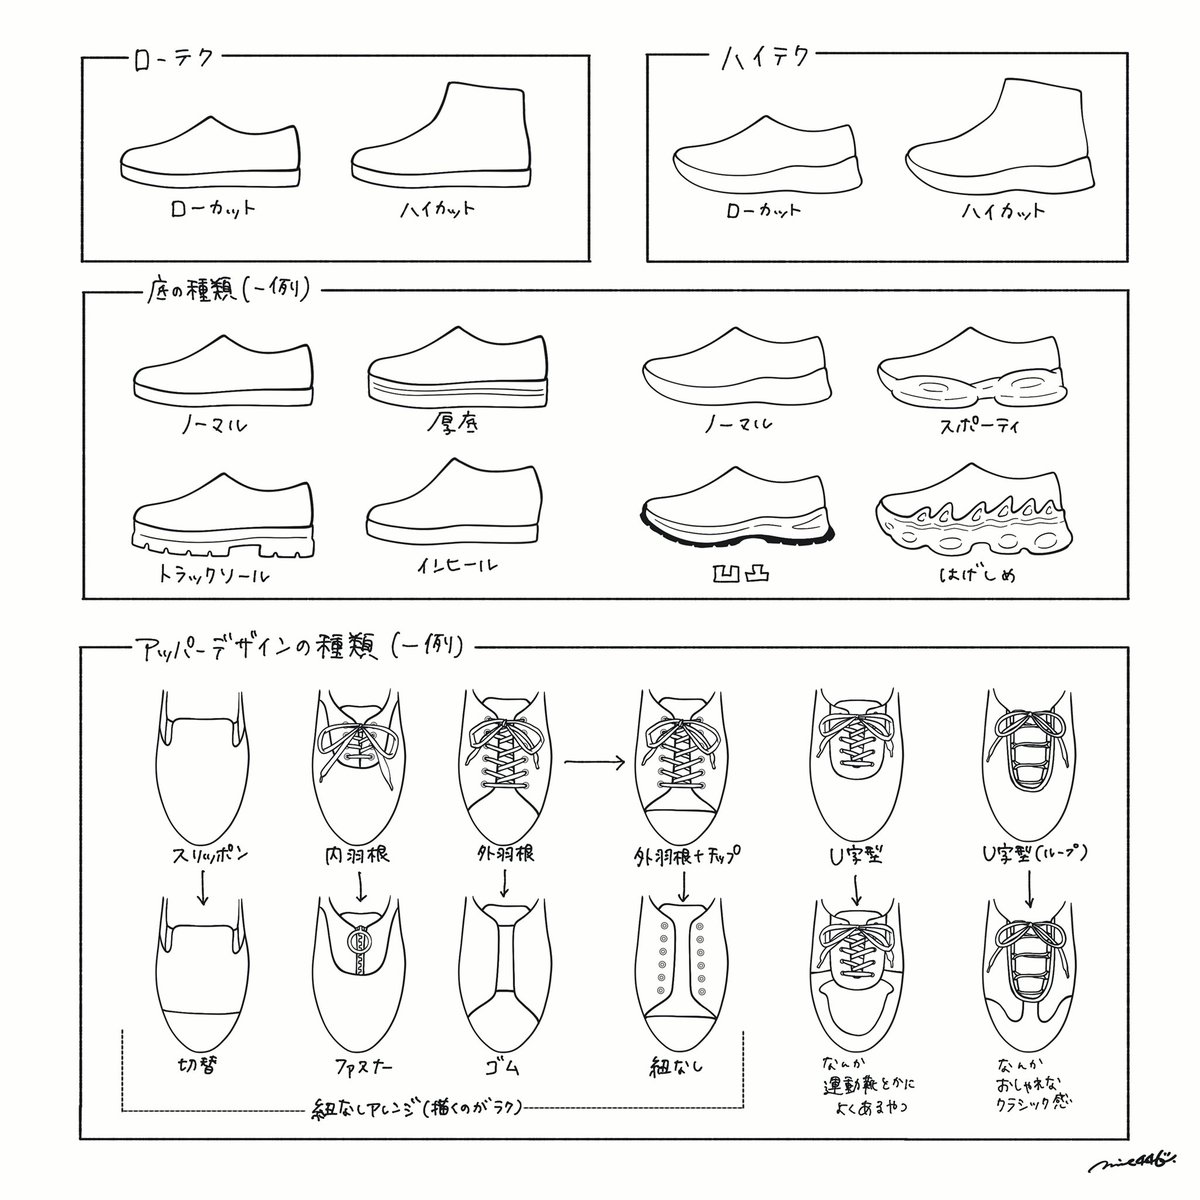 スニーカーを描く時のチートシートを作ってみました🤔
底やデザインのバリエーションはもっとあるけど、超代表的なのはこんな感じかな…👟
#靴の描き方tips 